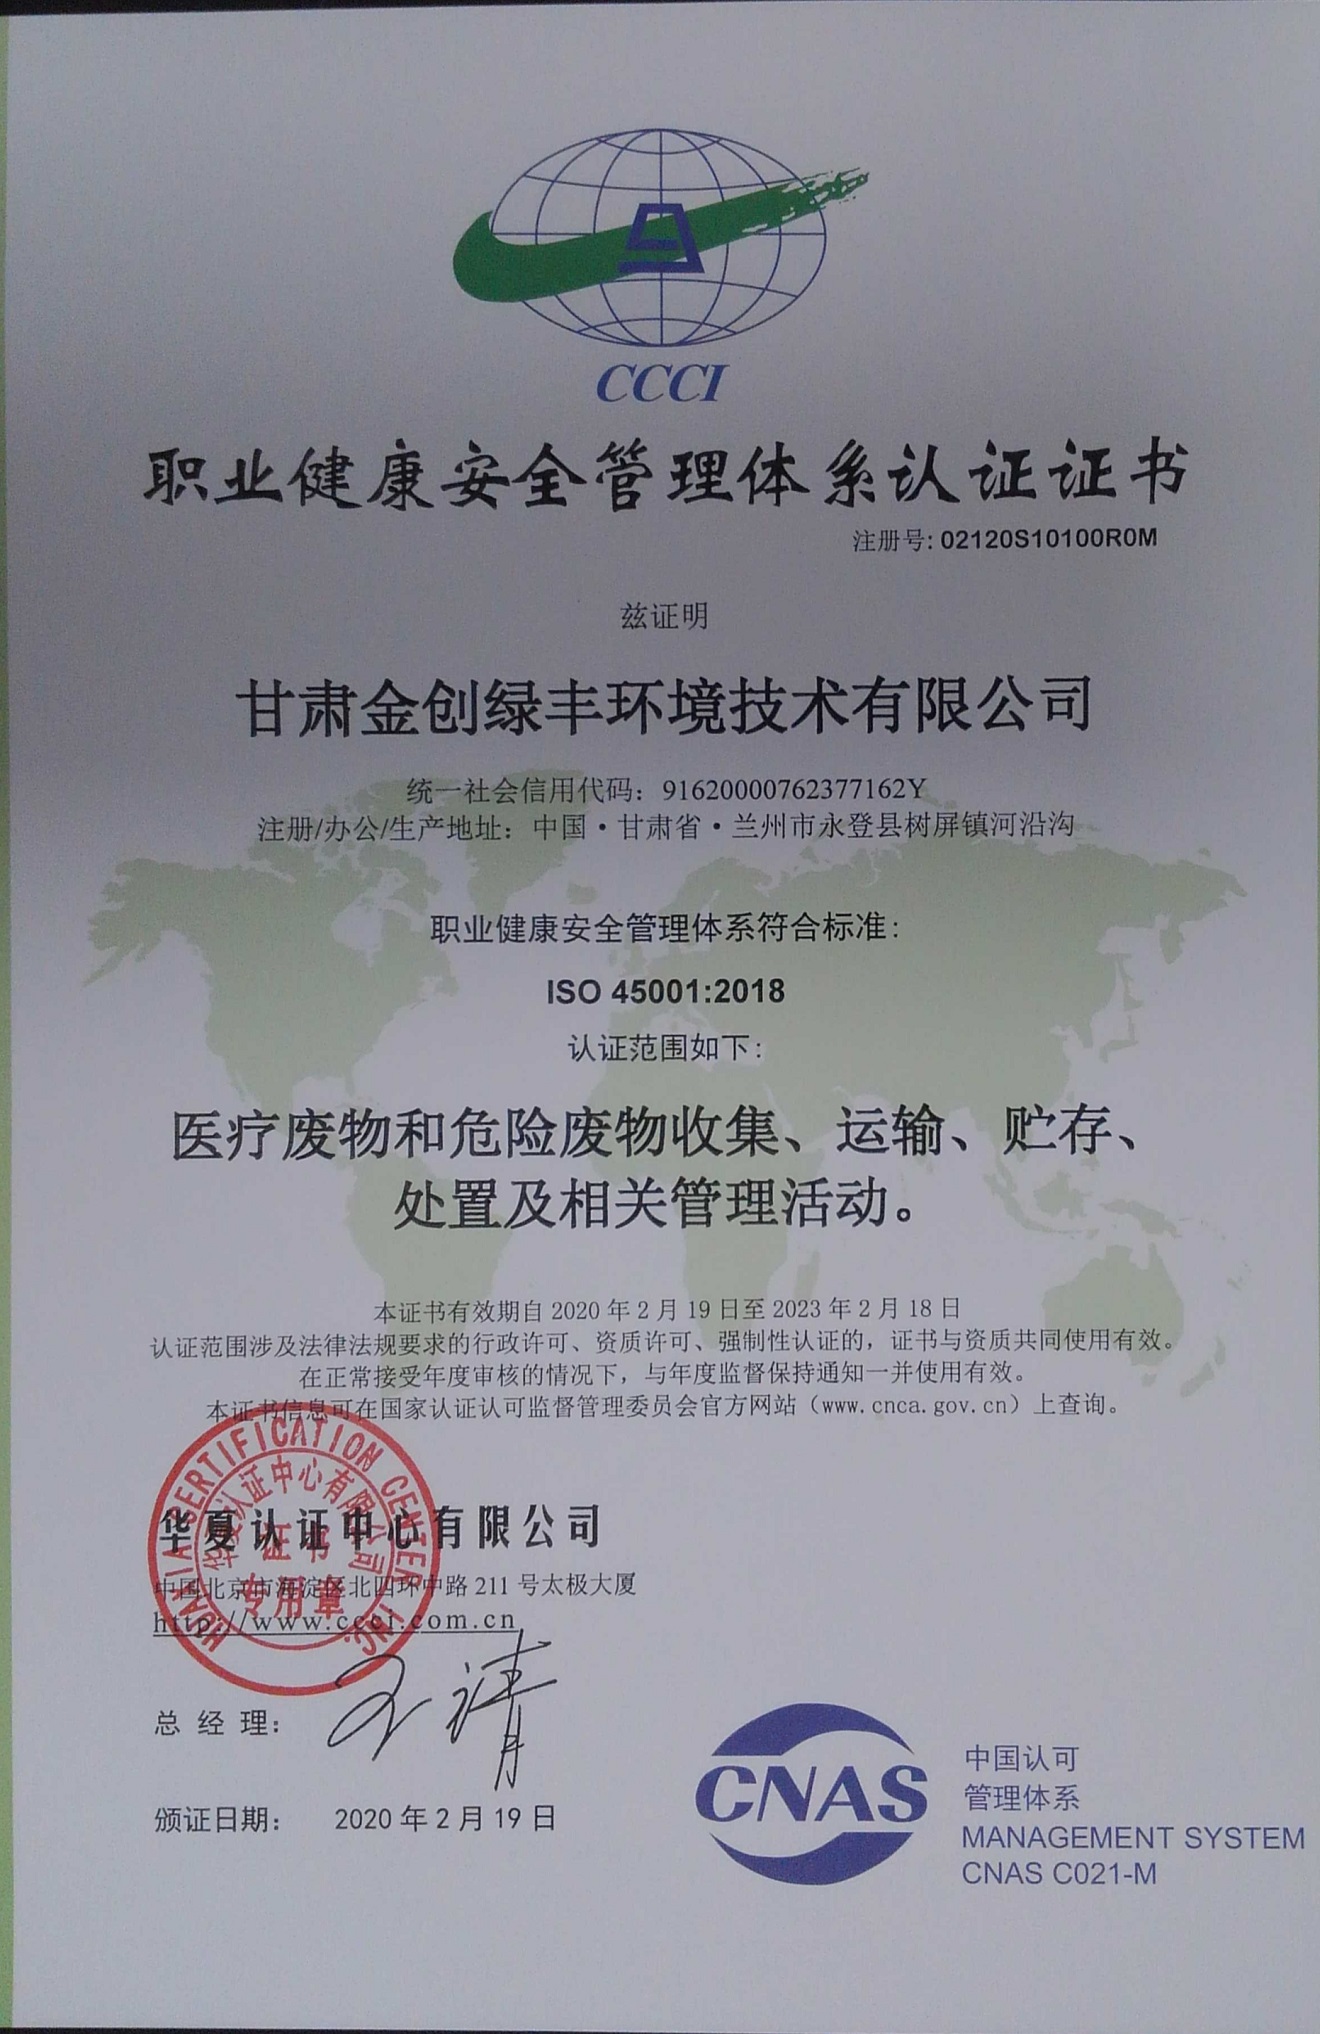 皇冠官方网站职业健康安全管理体系认证证书1_看图王.jpg